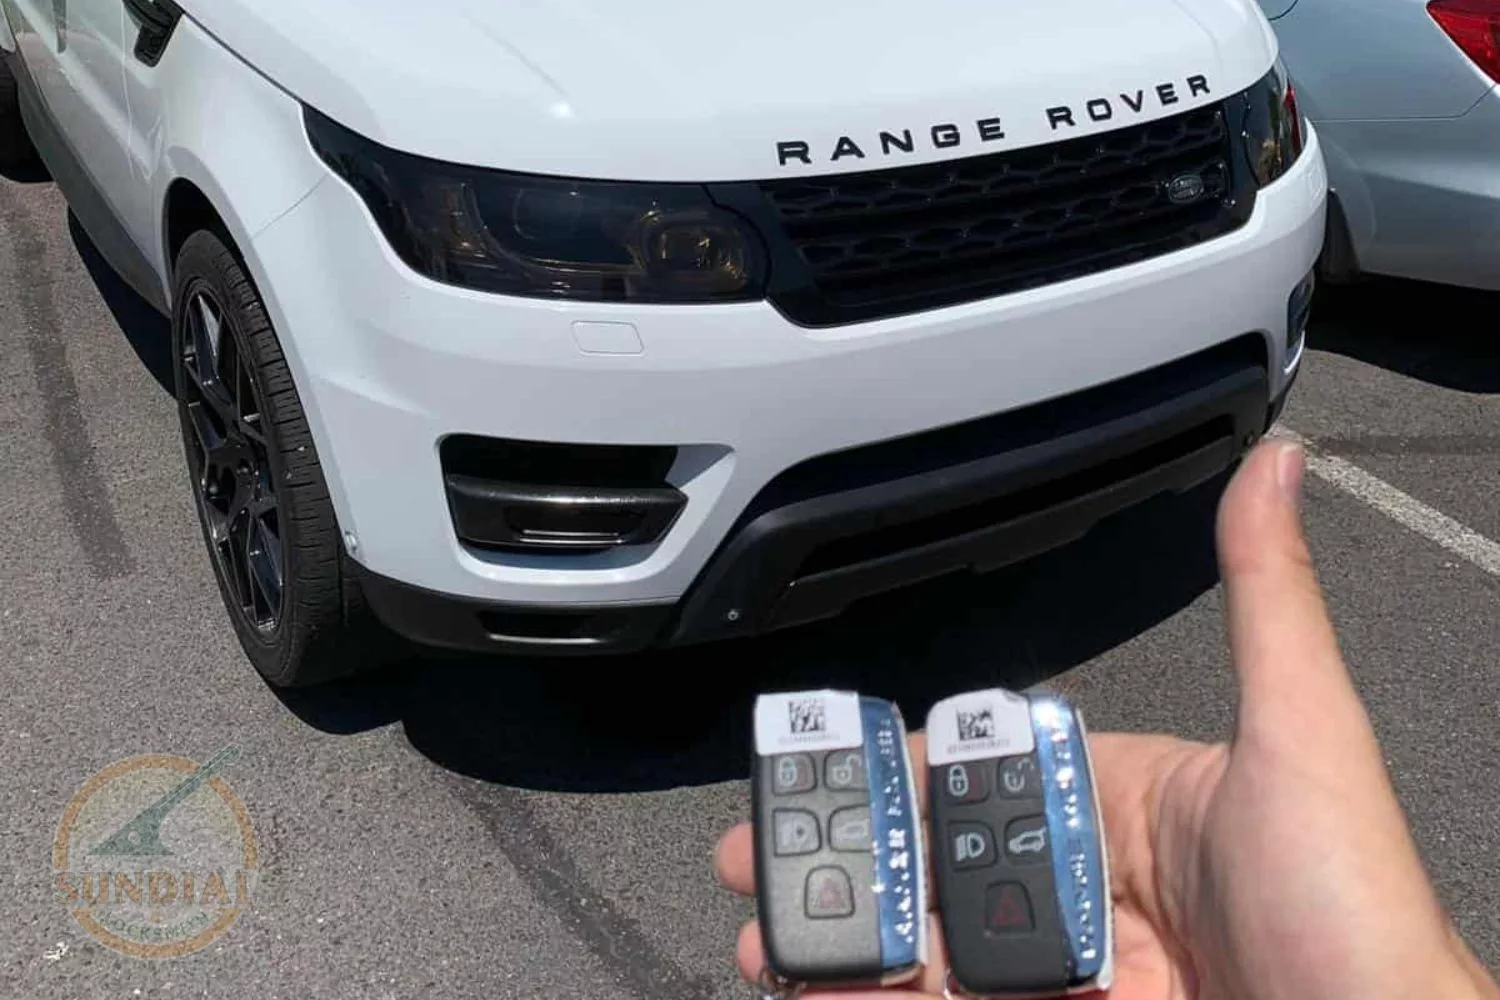 Hand holding keys to white Range Rover.